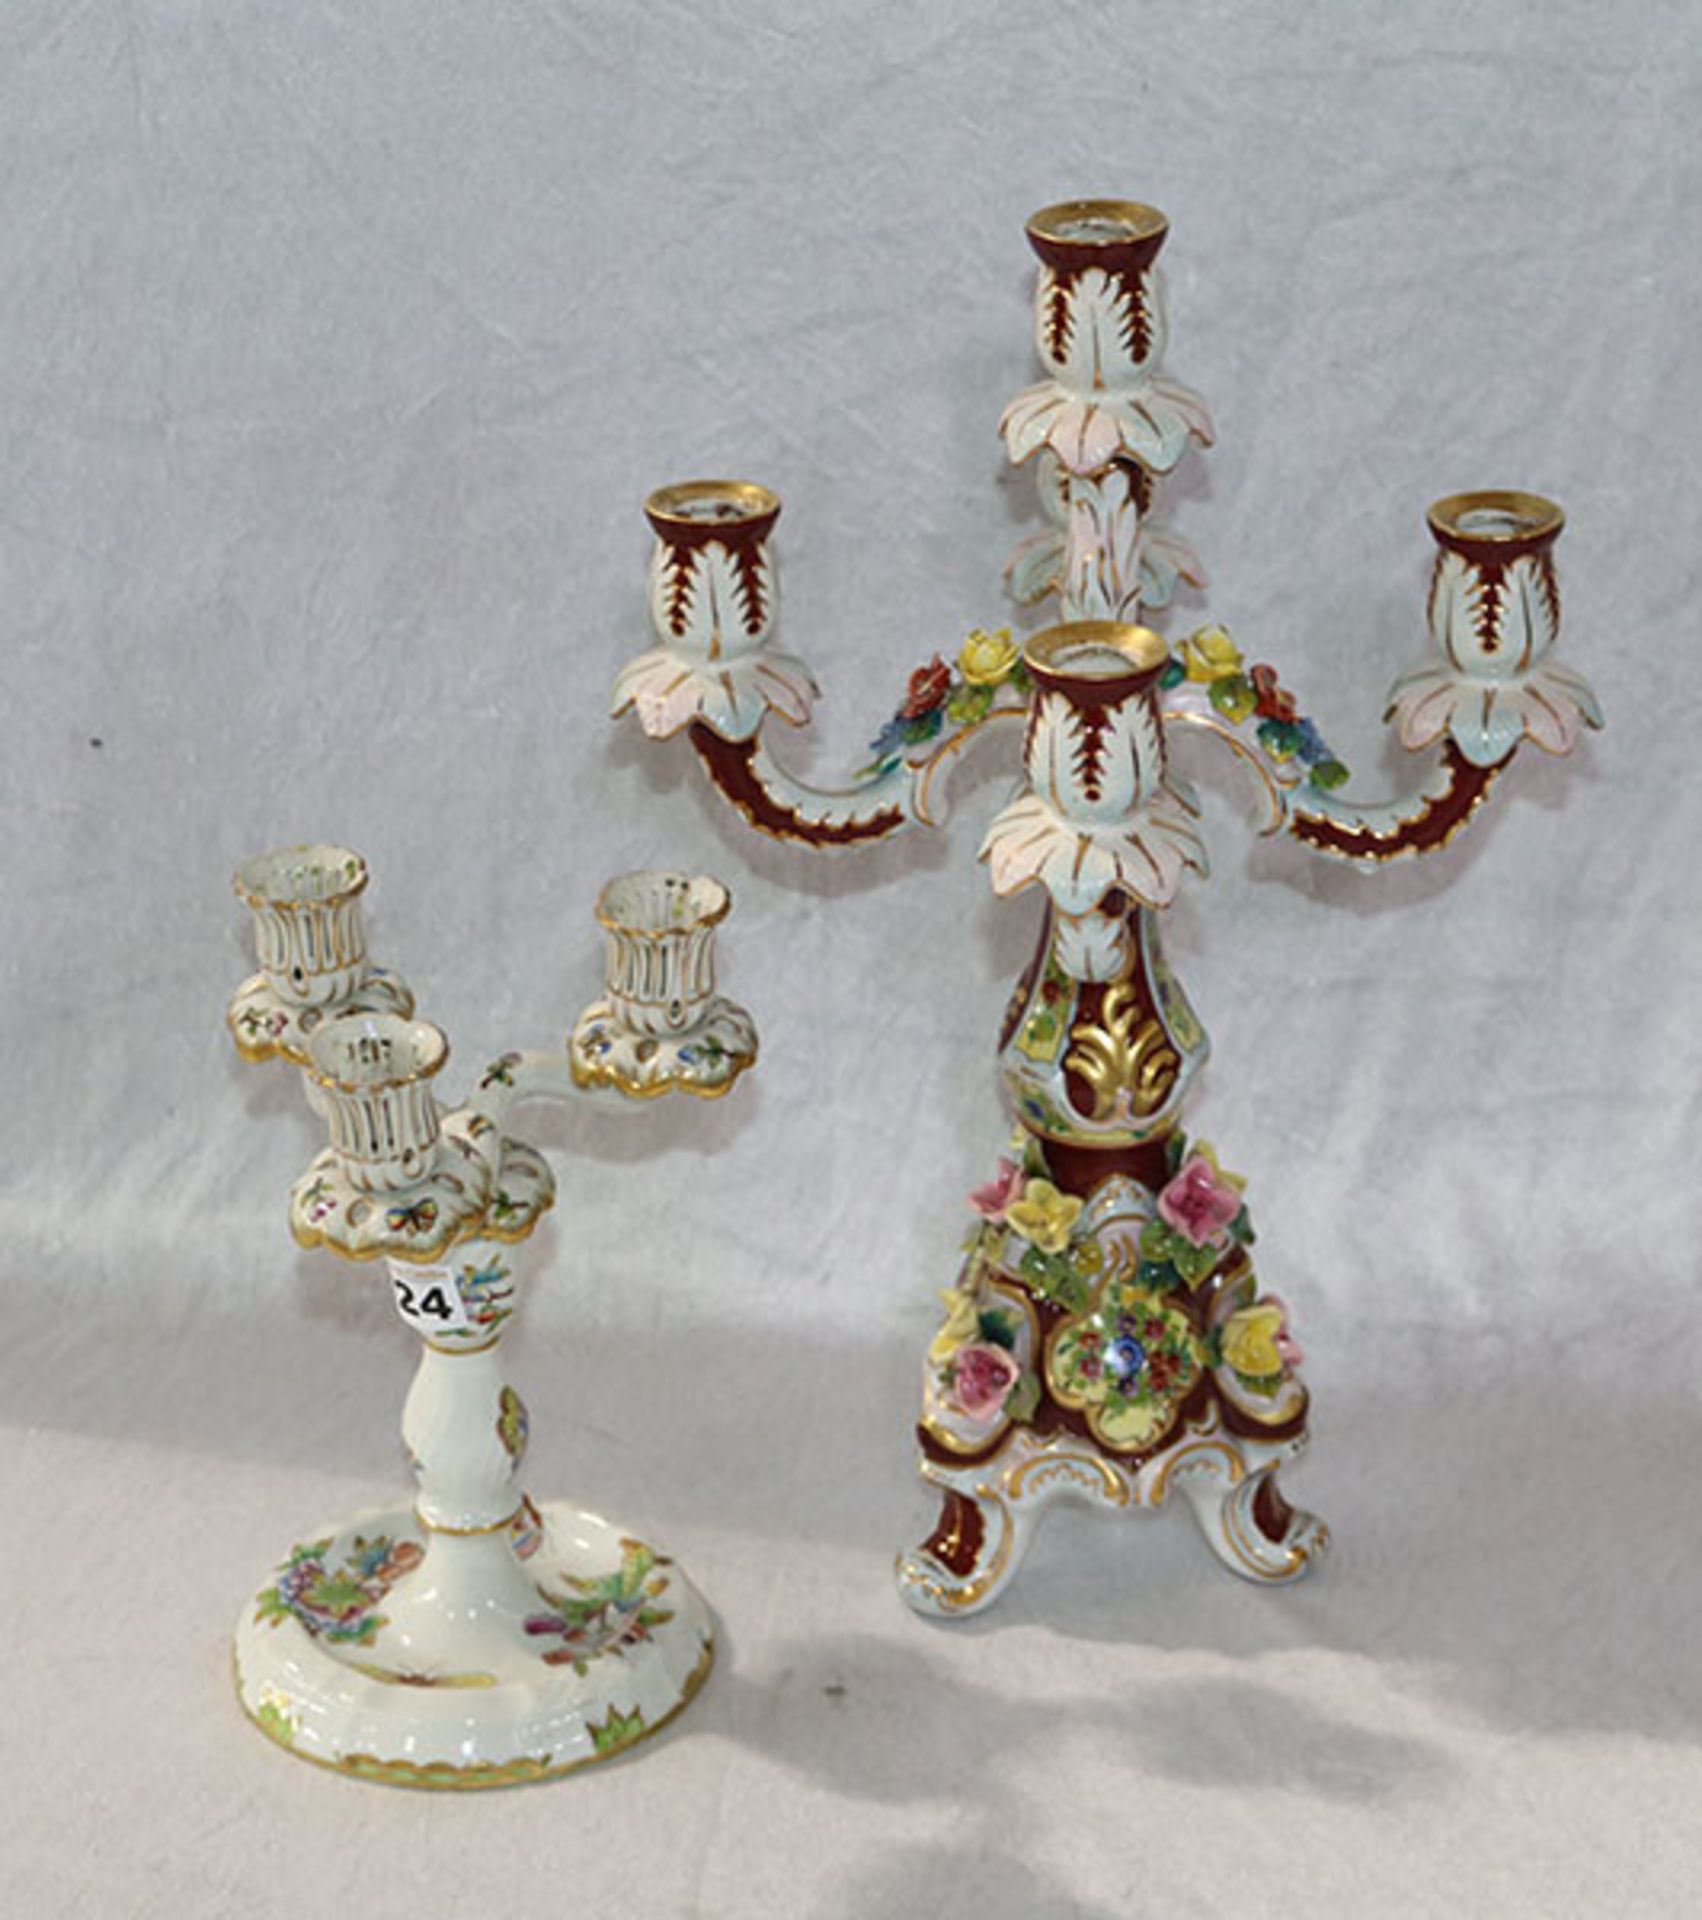 Herend Porzellan Kerzenleuchter, 3-armig, Dekor Victoria, eine Tülle beschädigt und geklebt, H 23